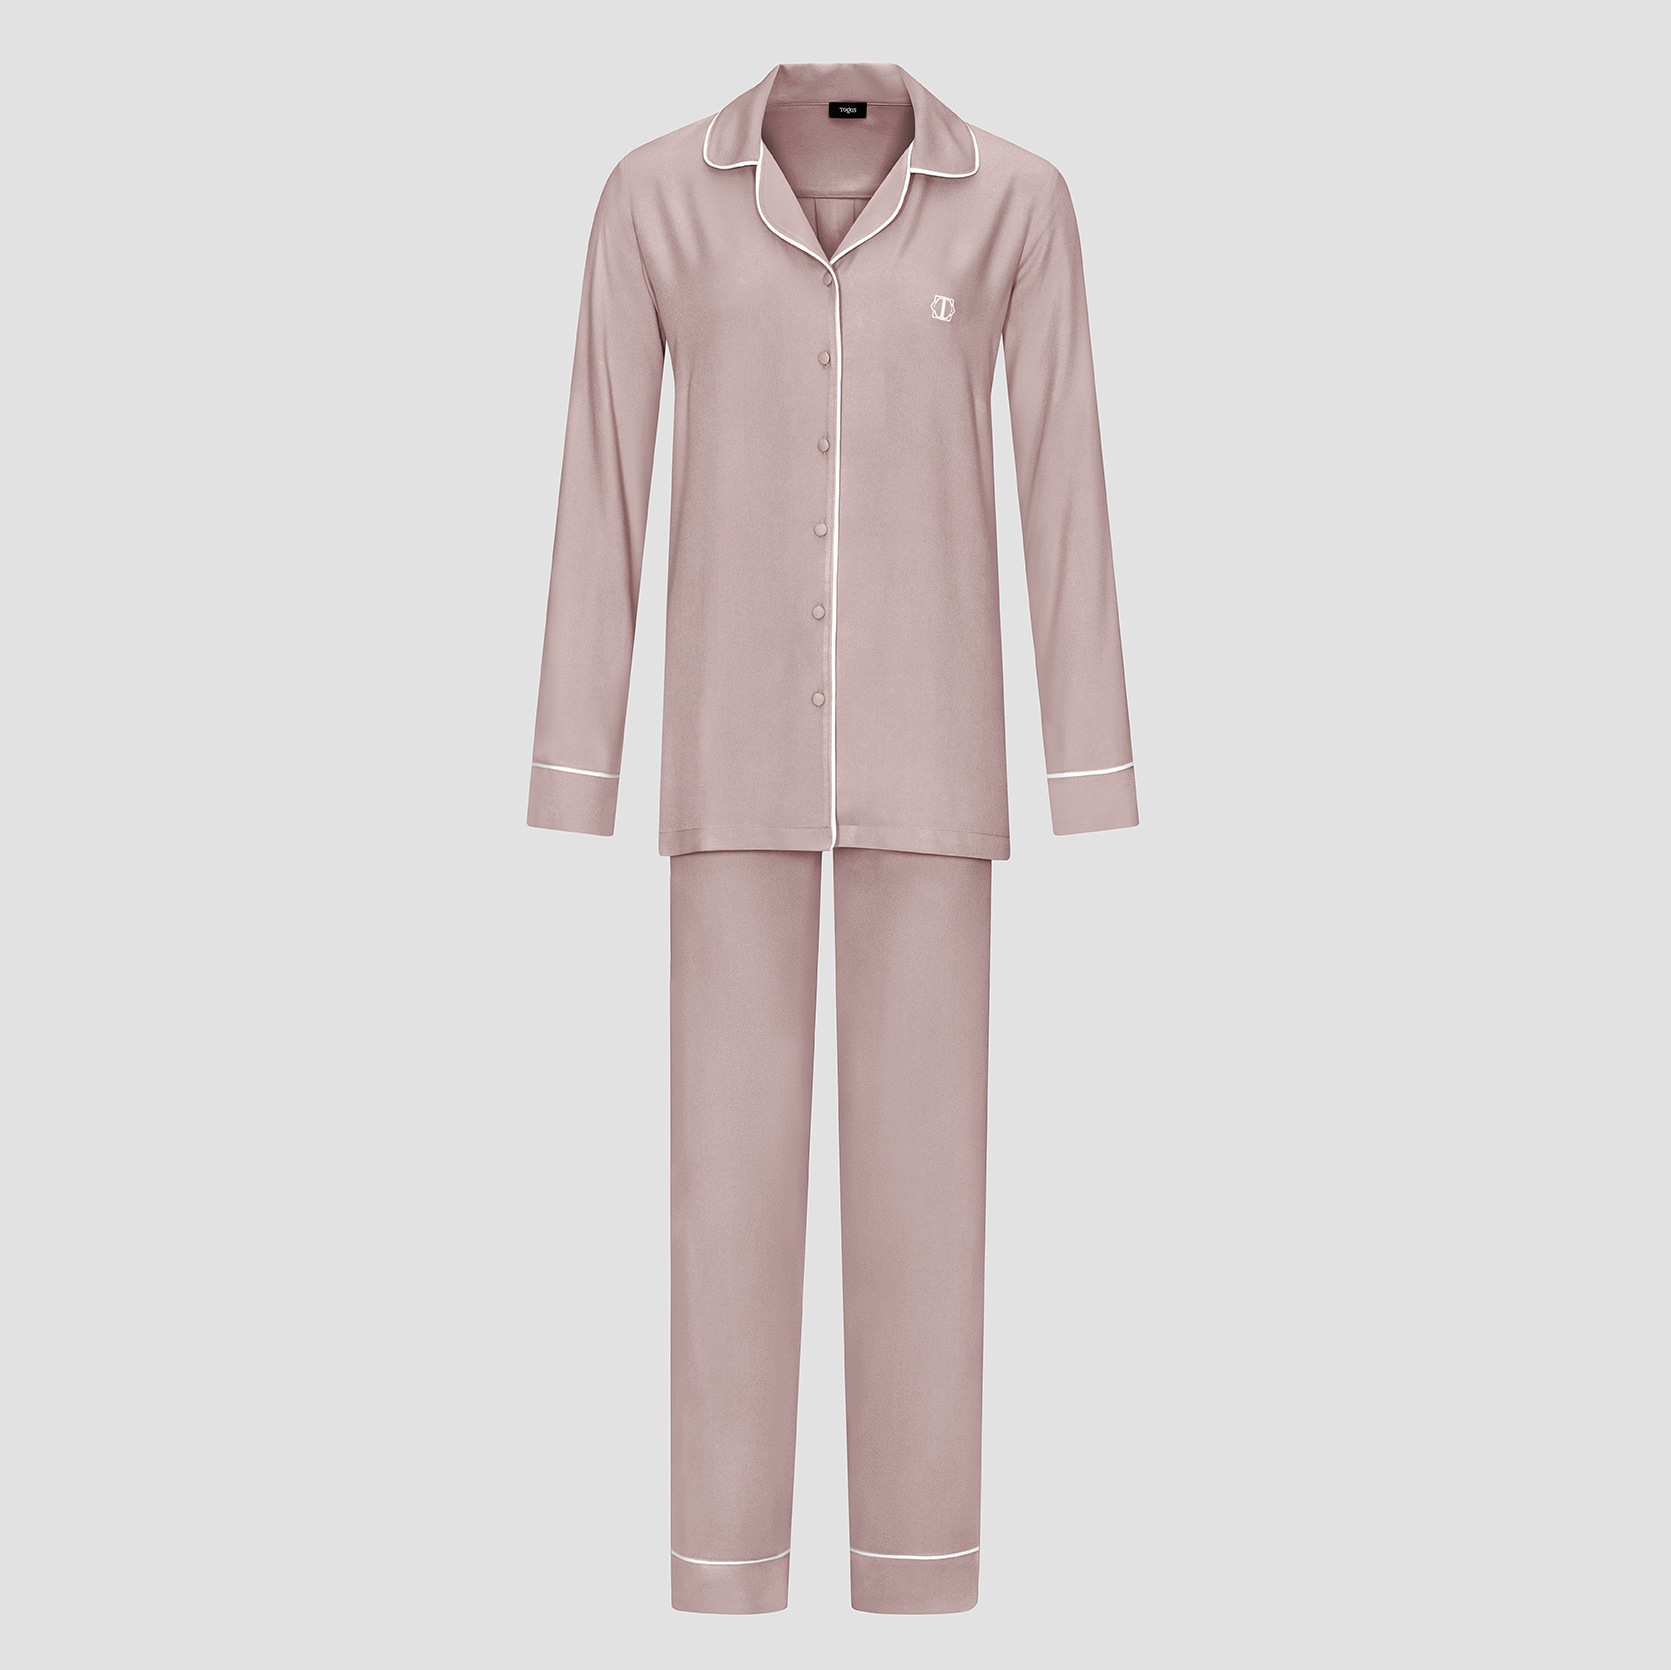 Пижама женская Togas Рамель розовая 2 предмета пижама брюки